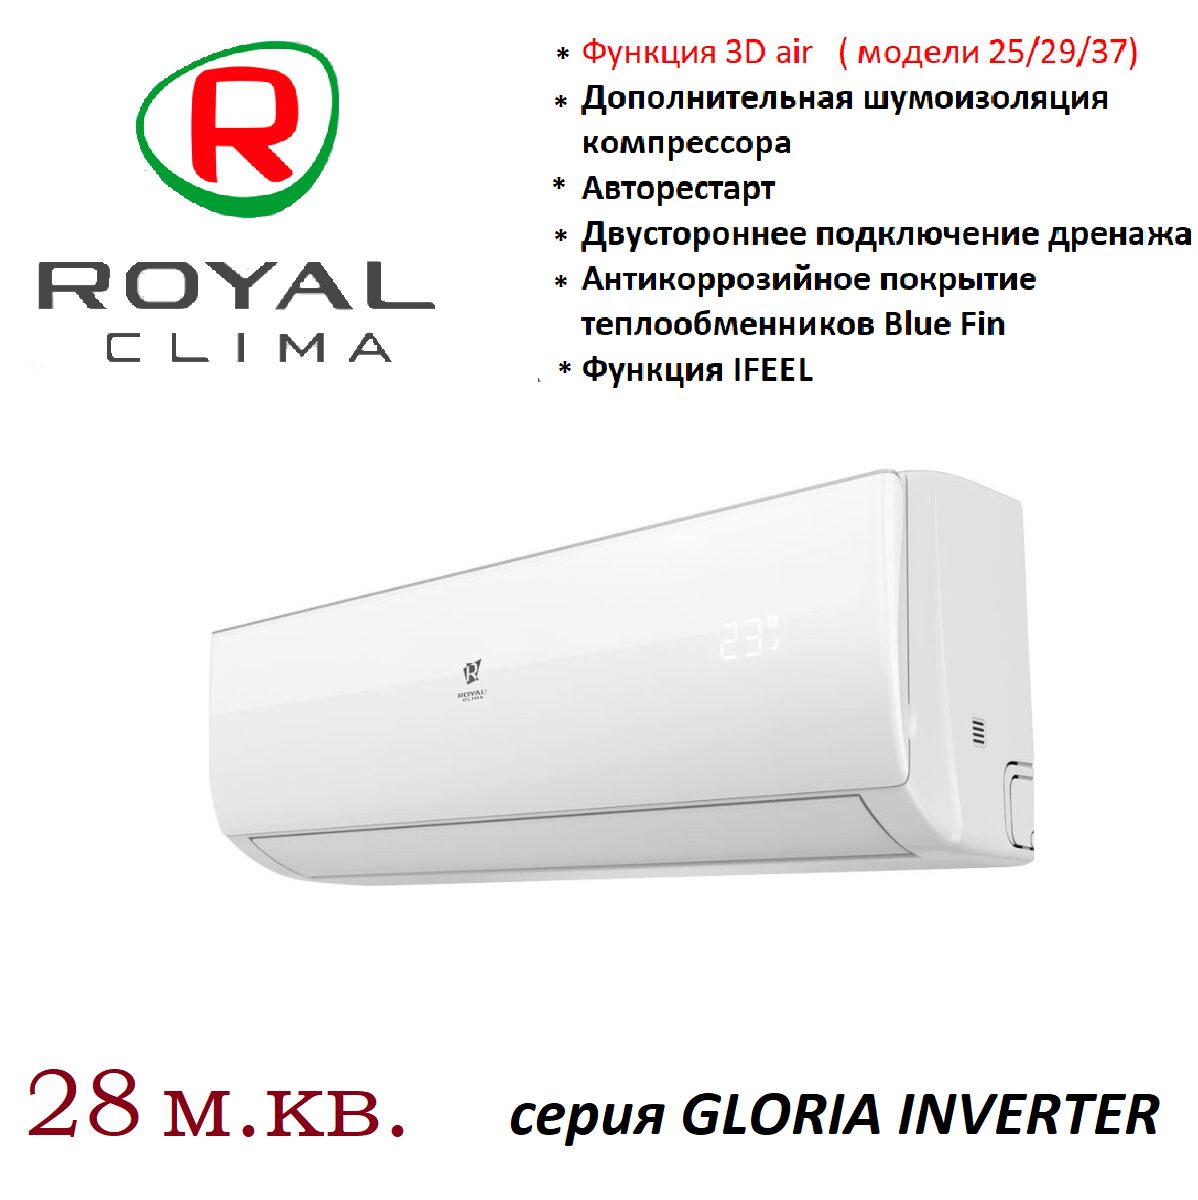 Роял клима кондиционеры инверторные. Royal clima Gloria Inverter. Инструкция к Роял.Клима кондиционер инверторный.